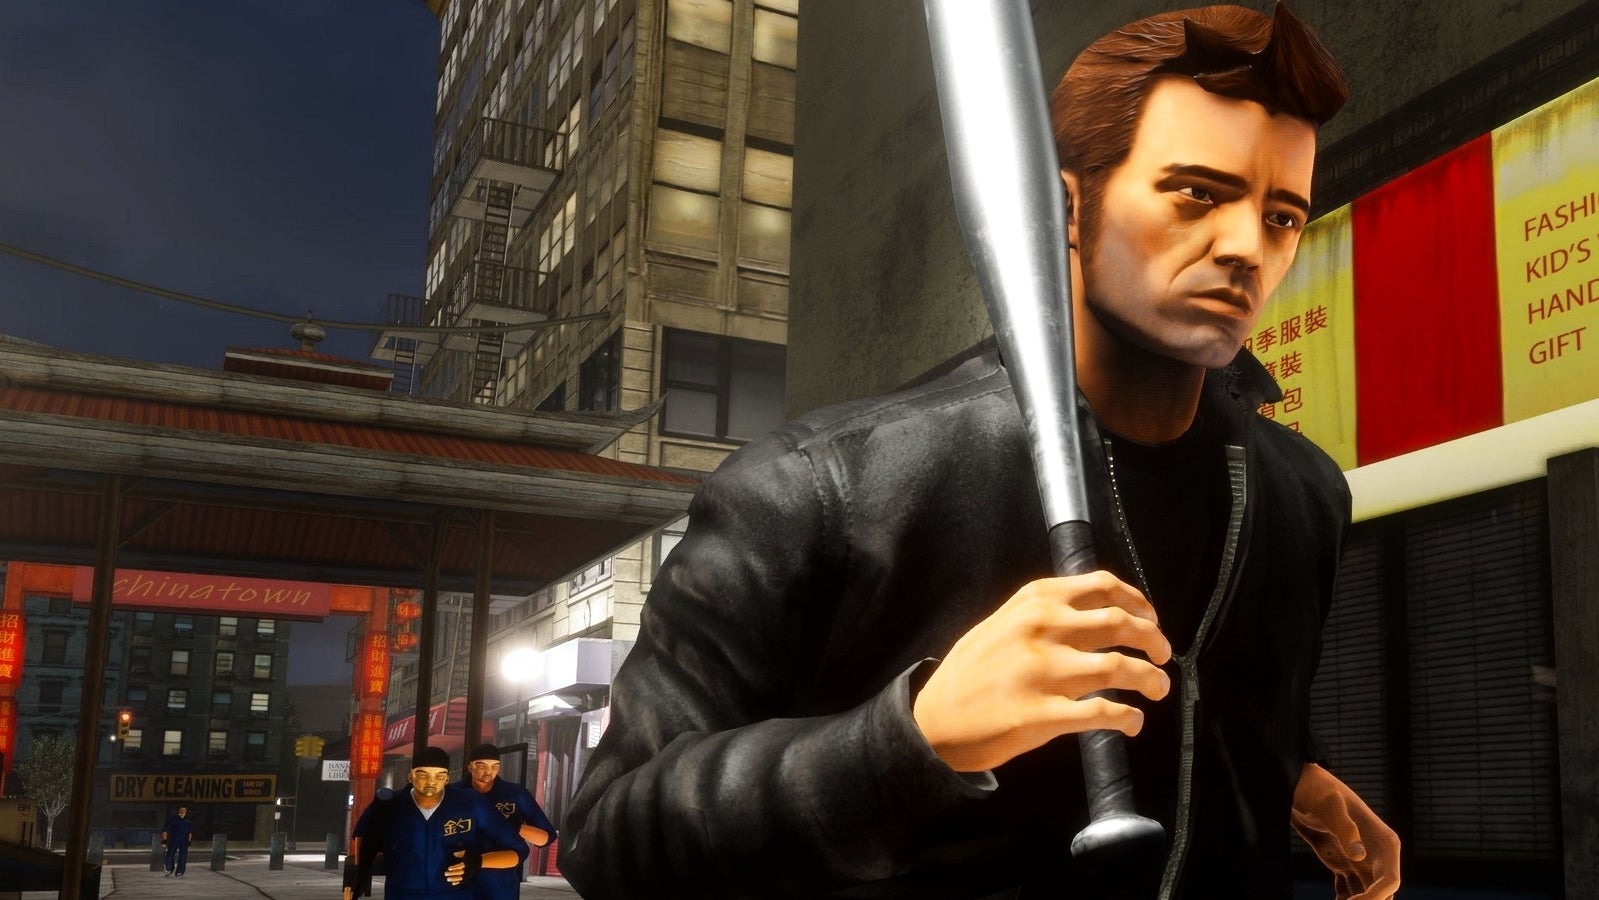 Bilder zu GTA Trilogy: Patch 1.02 veröffentlicht, Rockstar entschuldigt sich für "unerwartete" Probleme